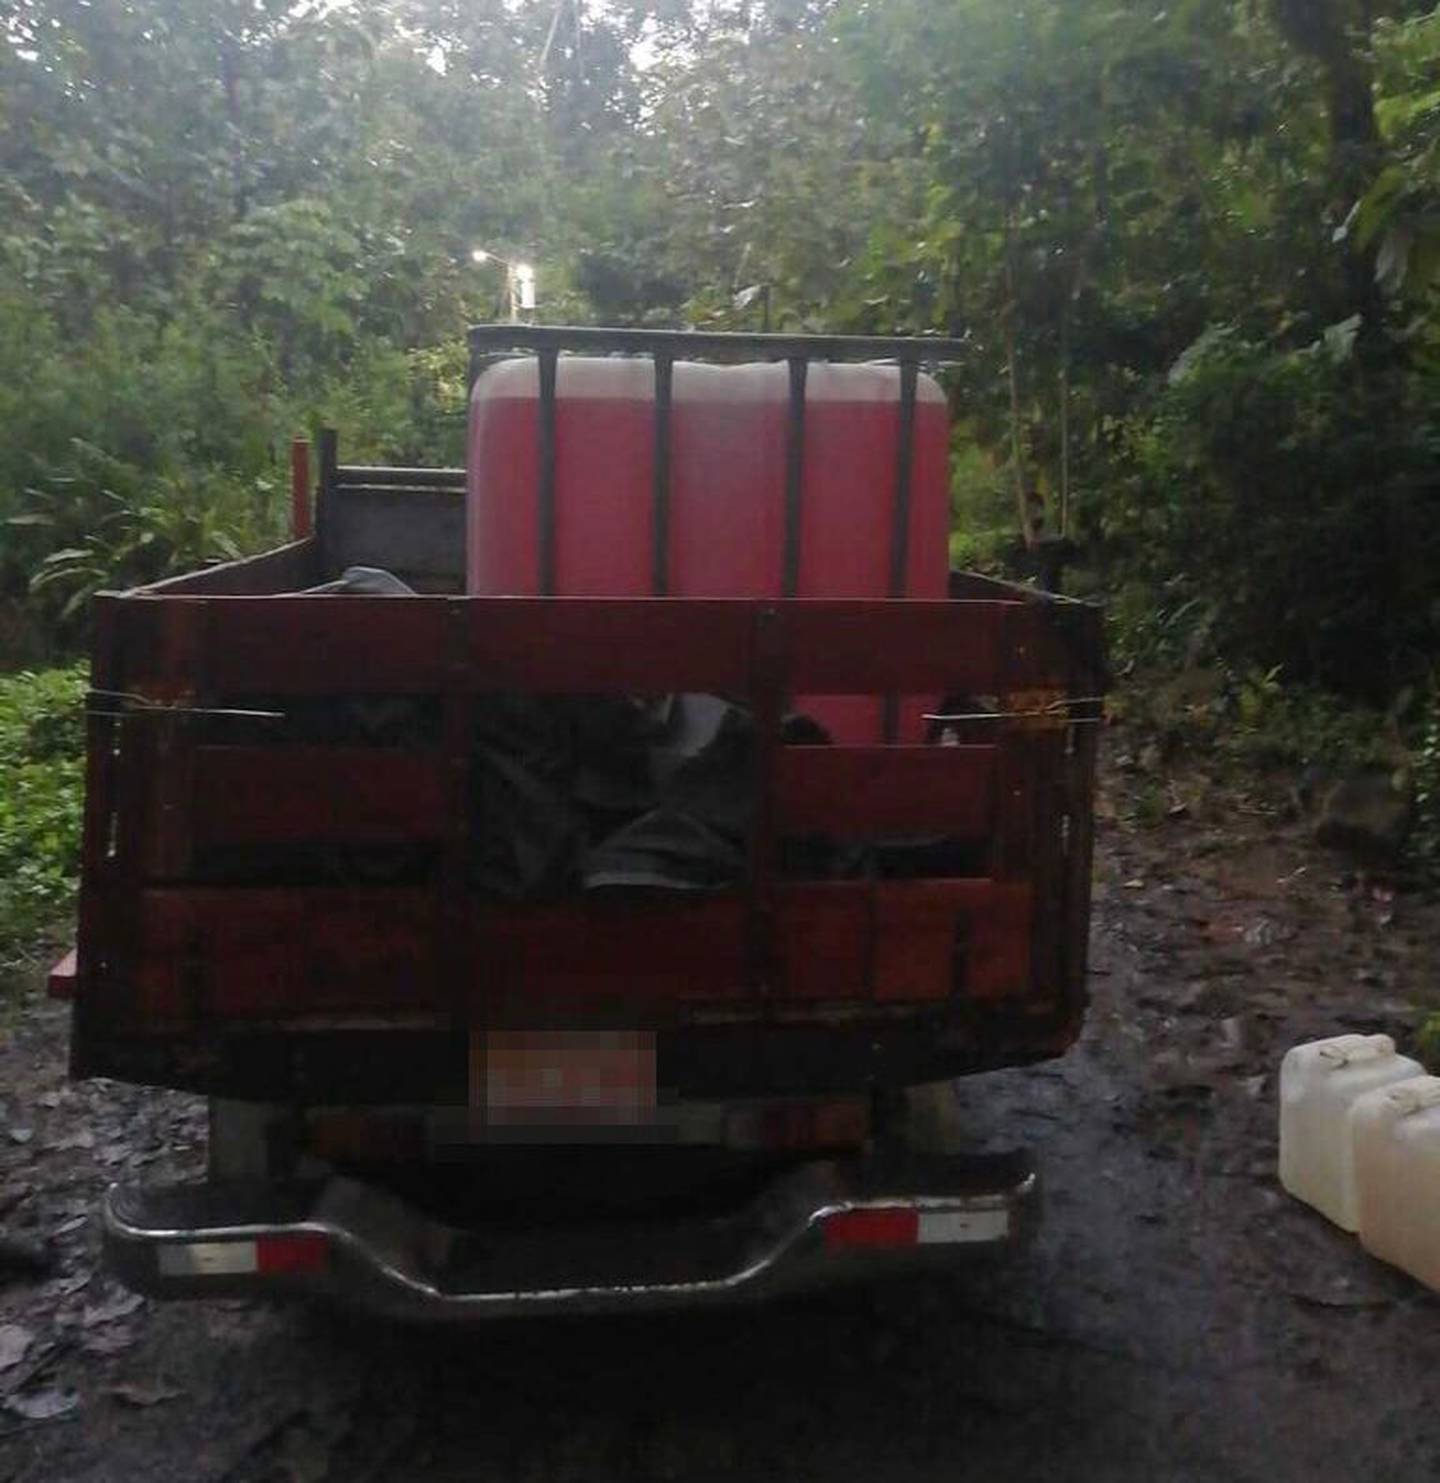 Este vehículo fue encontrado cargado con combustible cerca de la toma de Recope. Foto MSP.